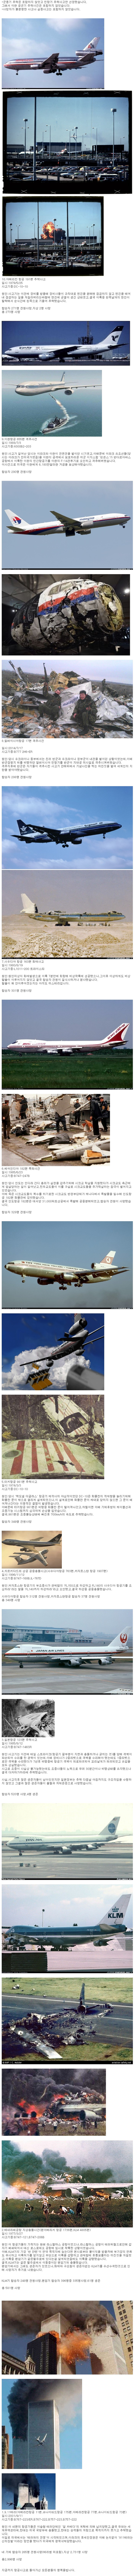 가장 많은 사망자가 발생한 항공사고